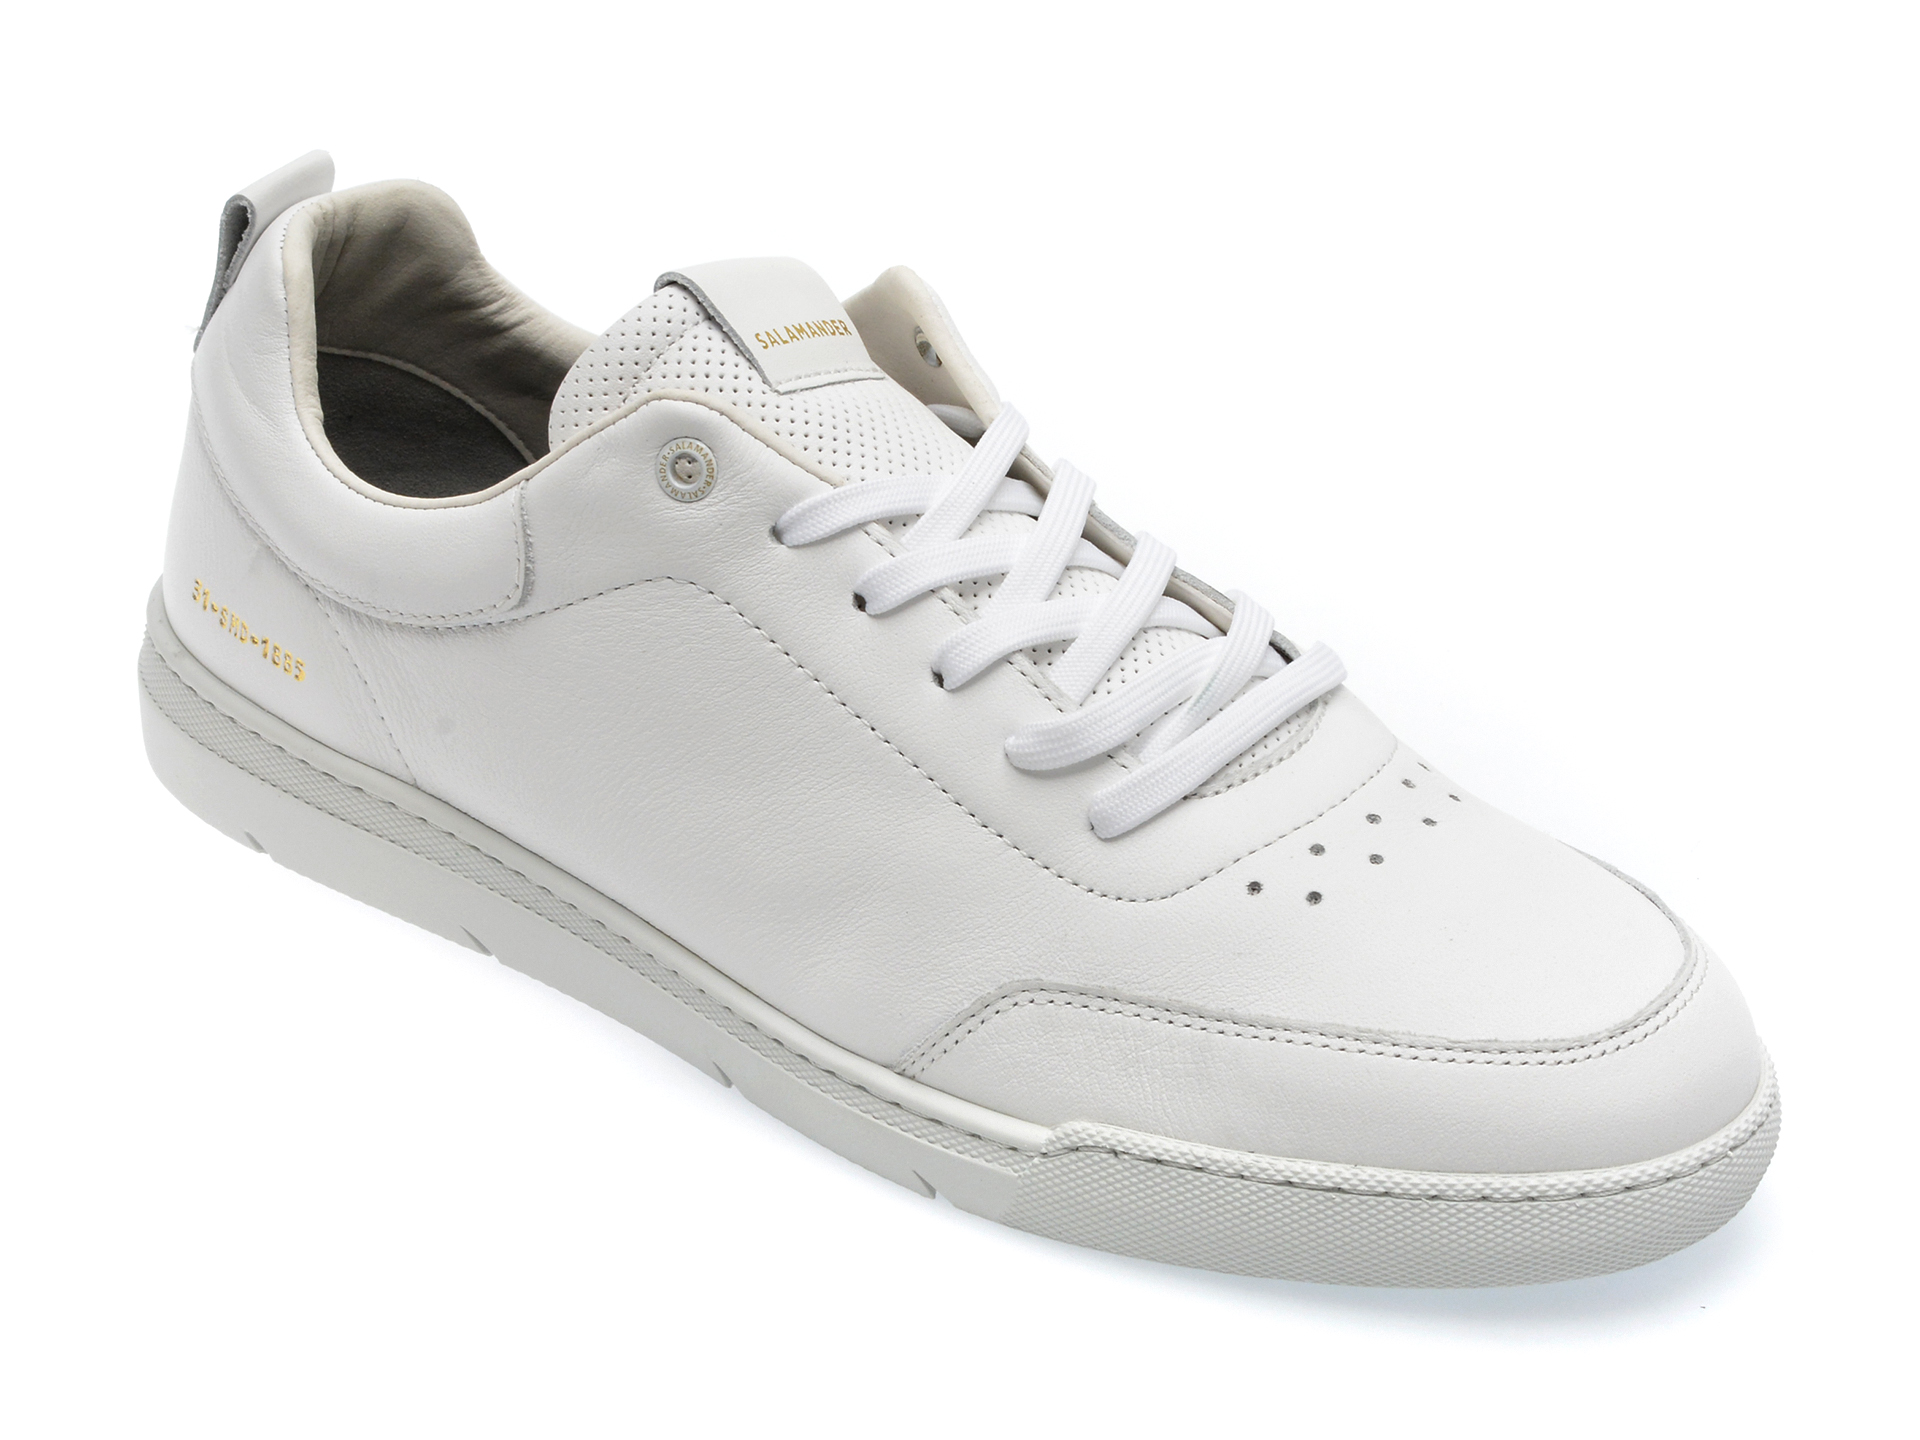 Pantofi SALAMANDER albi, 63103, din piele naturala /barbati/pantofi